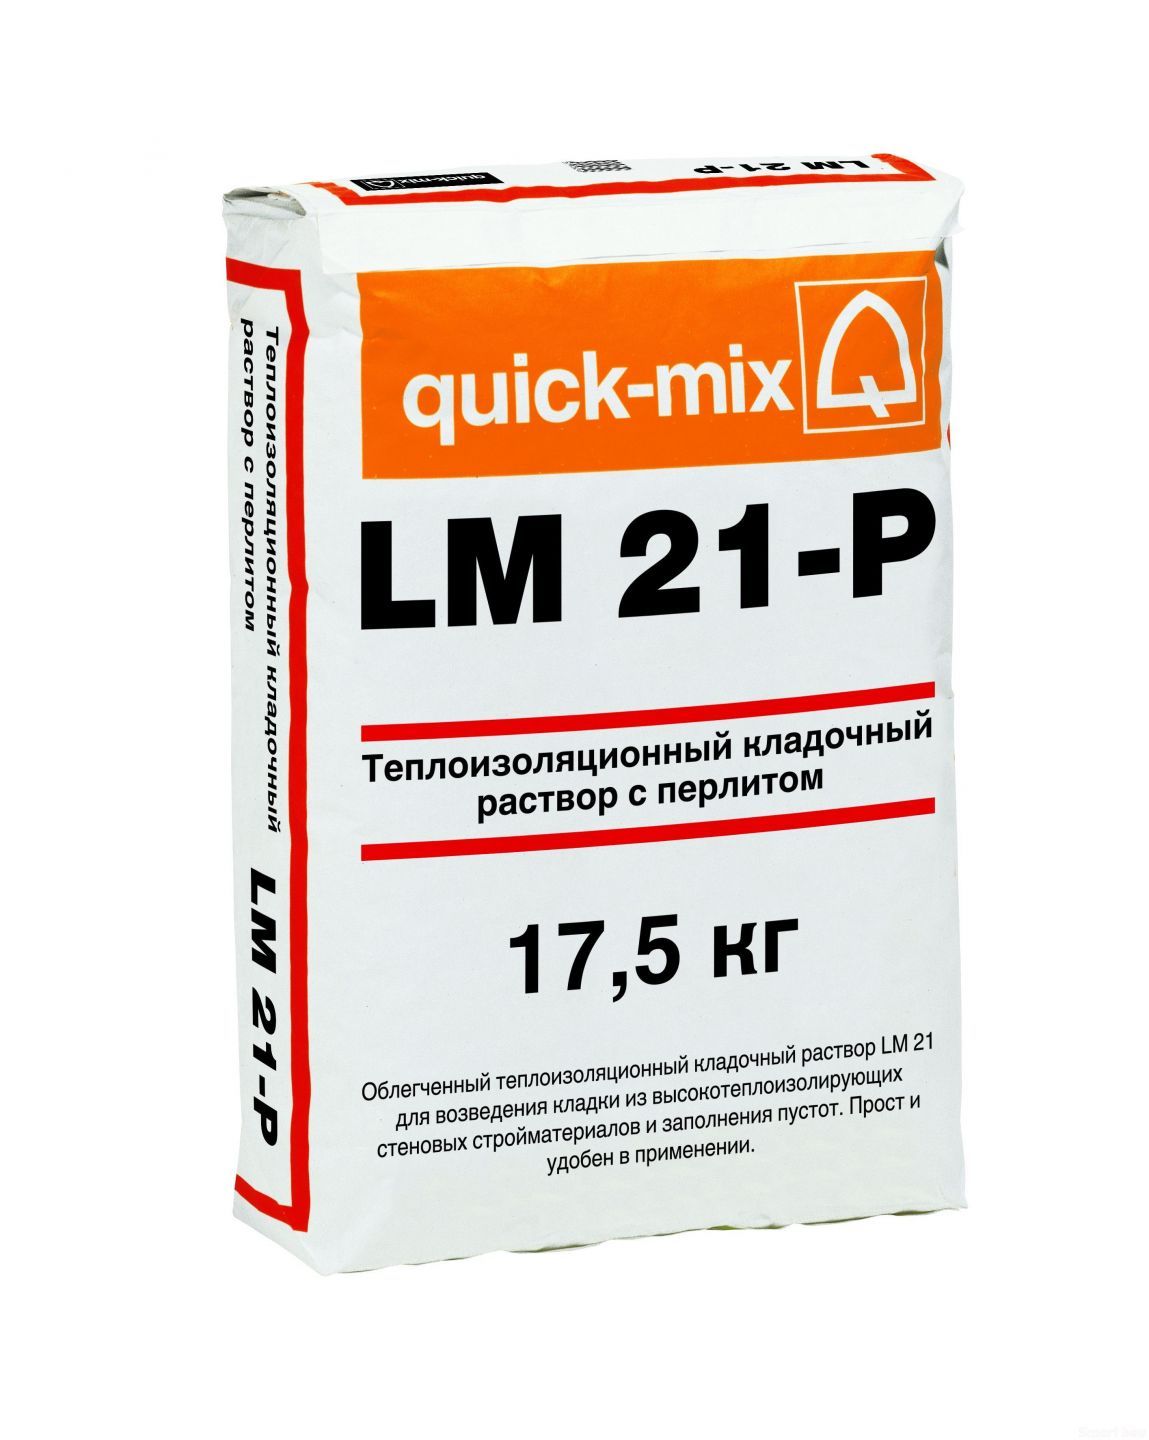 Тёплый кладочный раствор с пеностеклом quick-mix LM 21-P фото